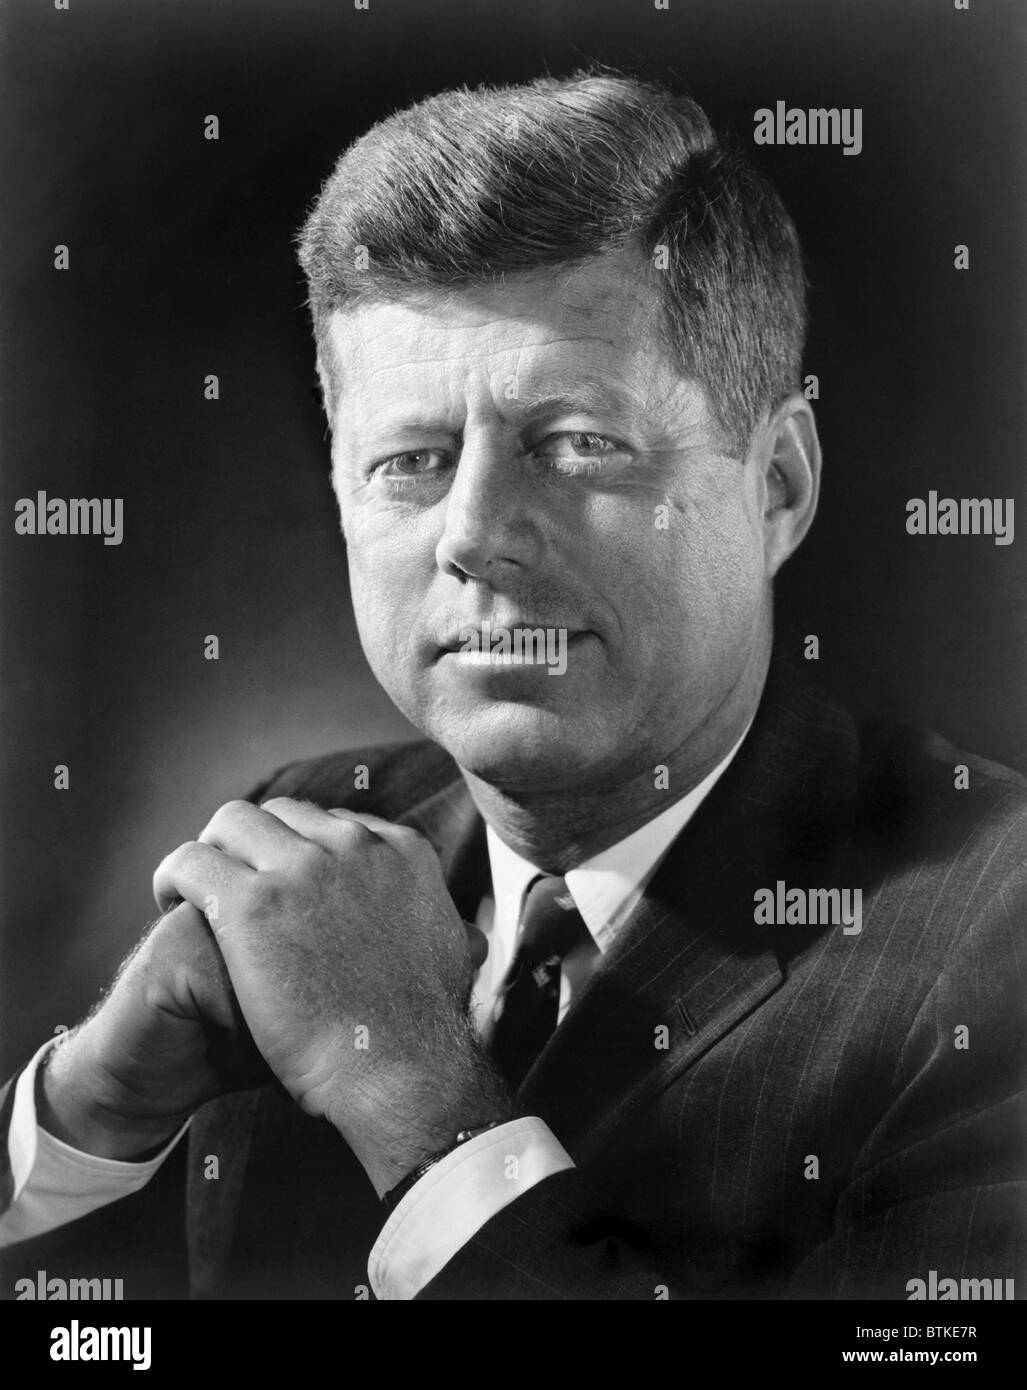 Le président John F. Kennedy dans un portrait de 1961. Banque D'Images